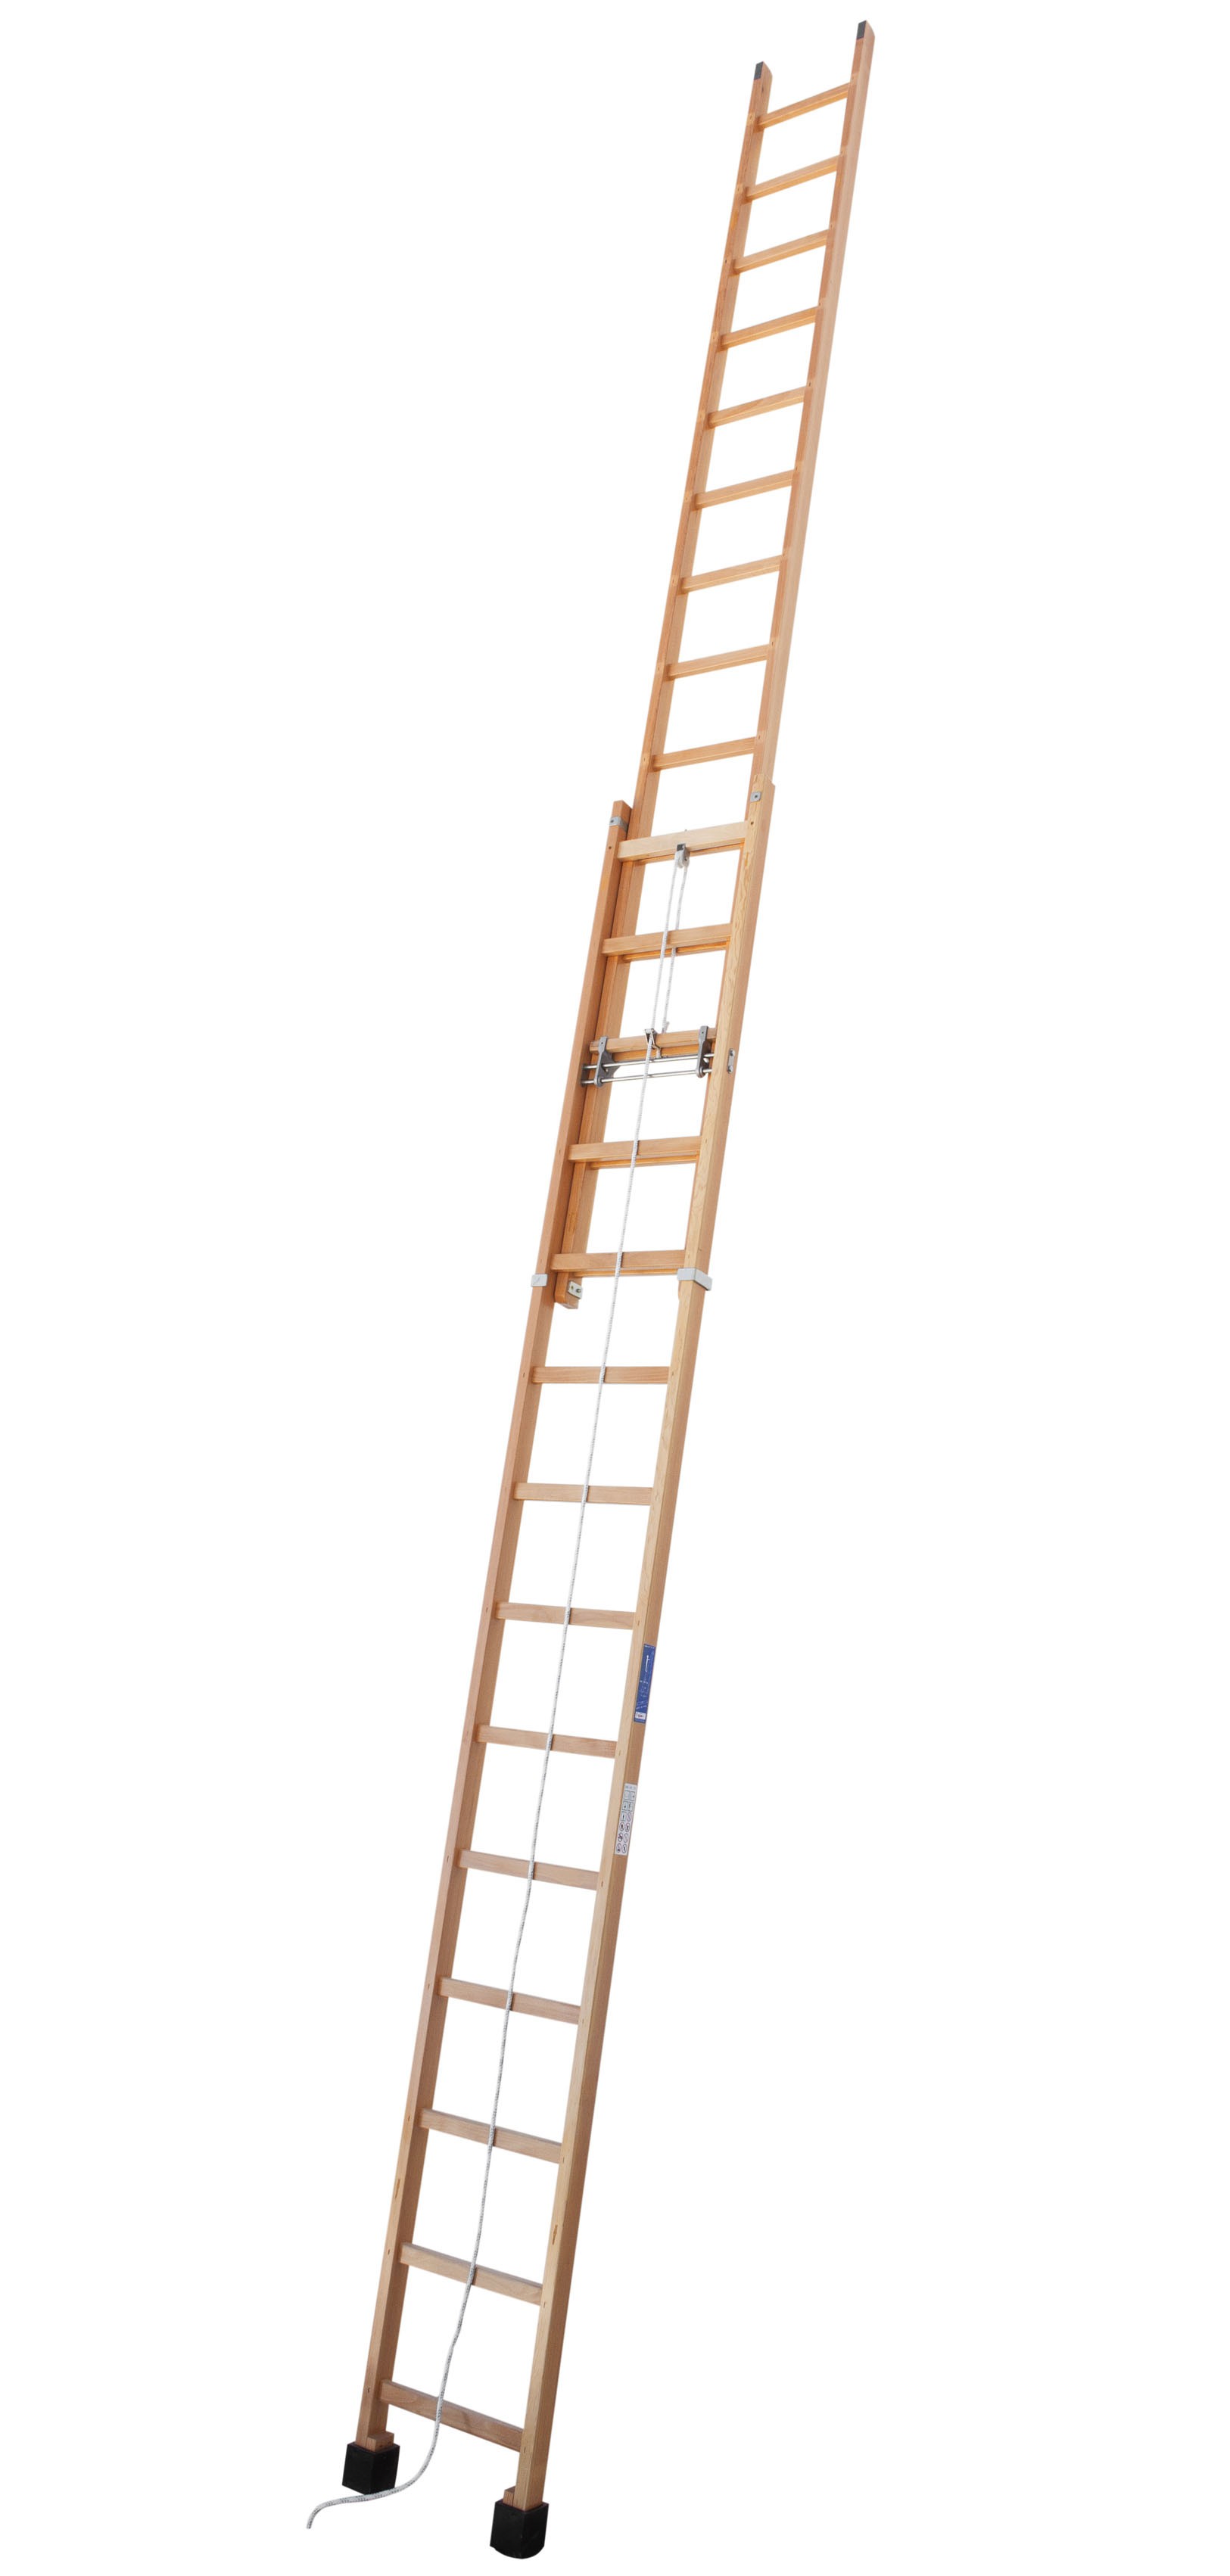 Escalera de madera extensible con sistema de cuerda y polea